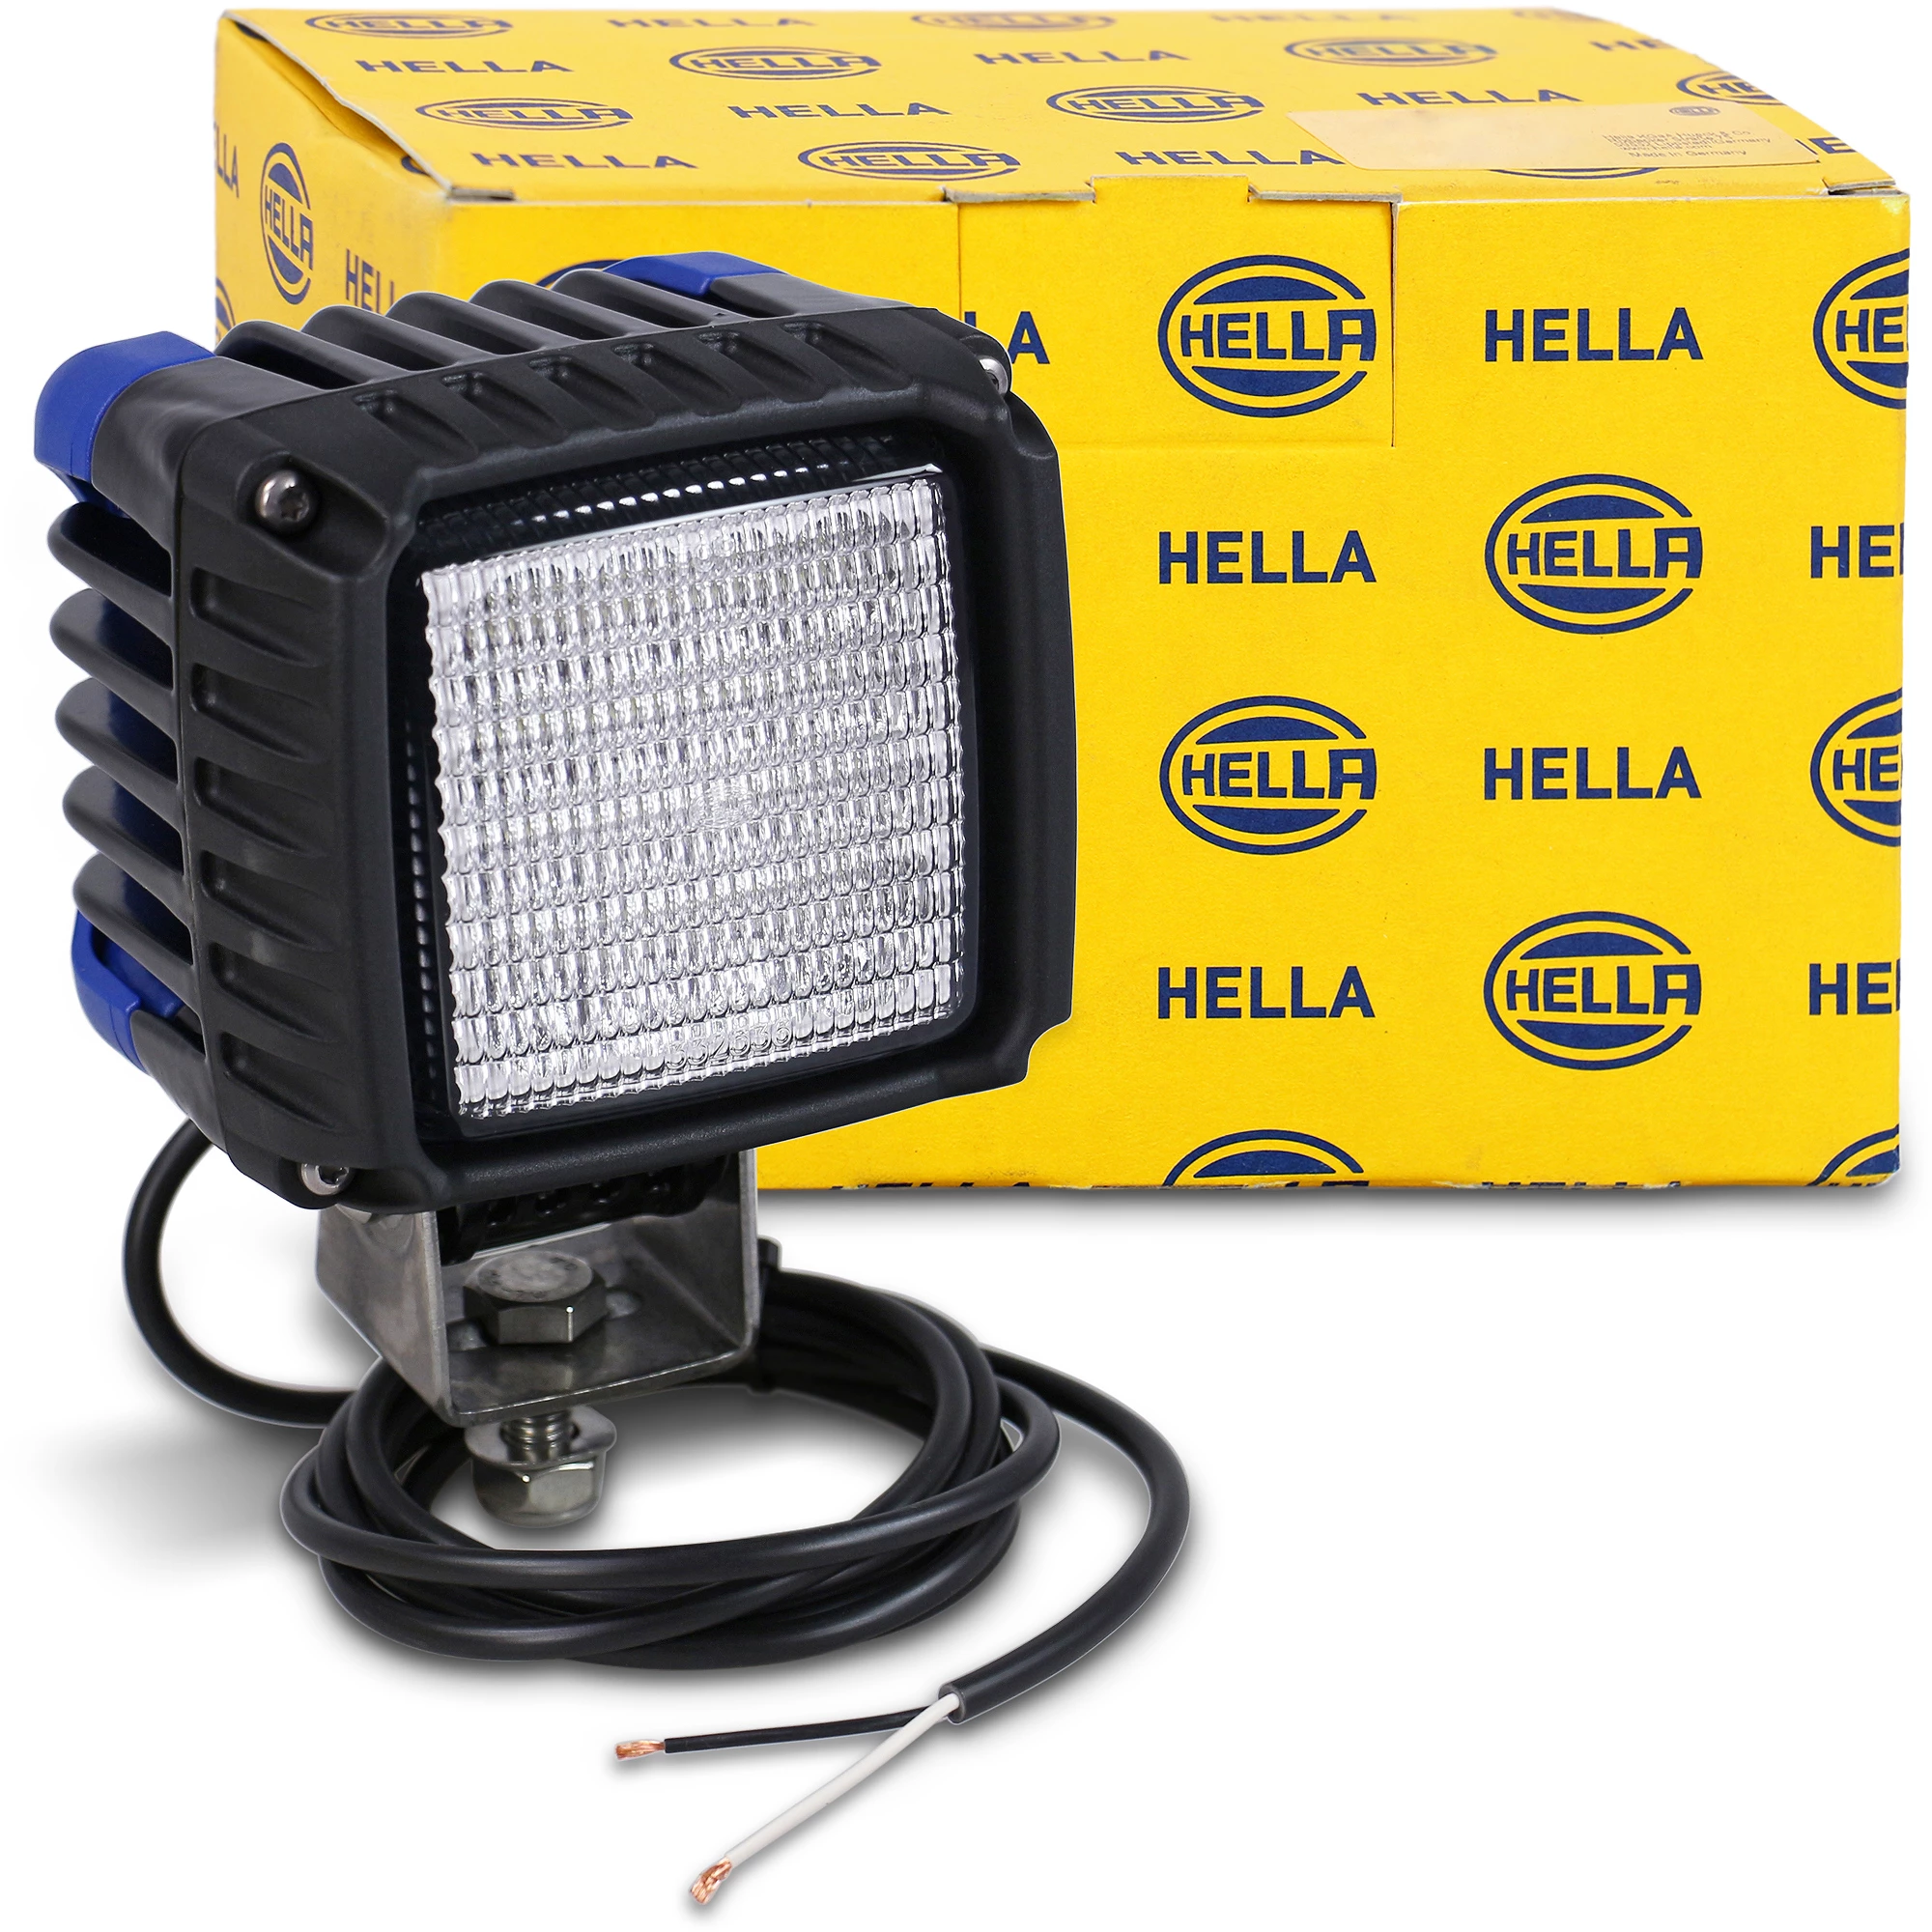 HELLA LED-Arbeitsscheinwerfer - Power Beam 2000 - 12/24V 1GA996189